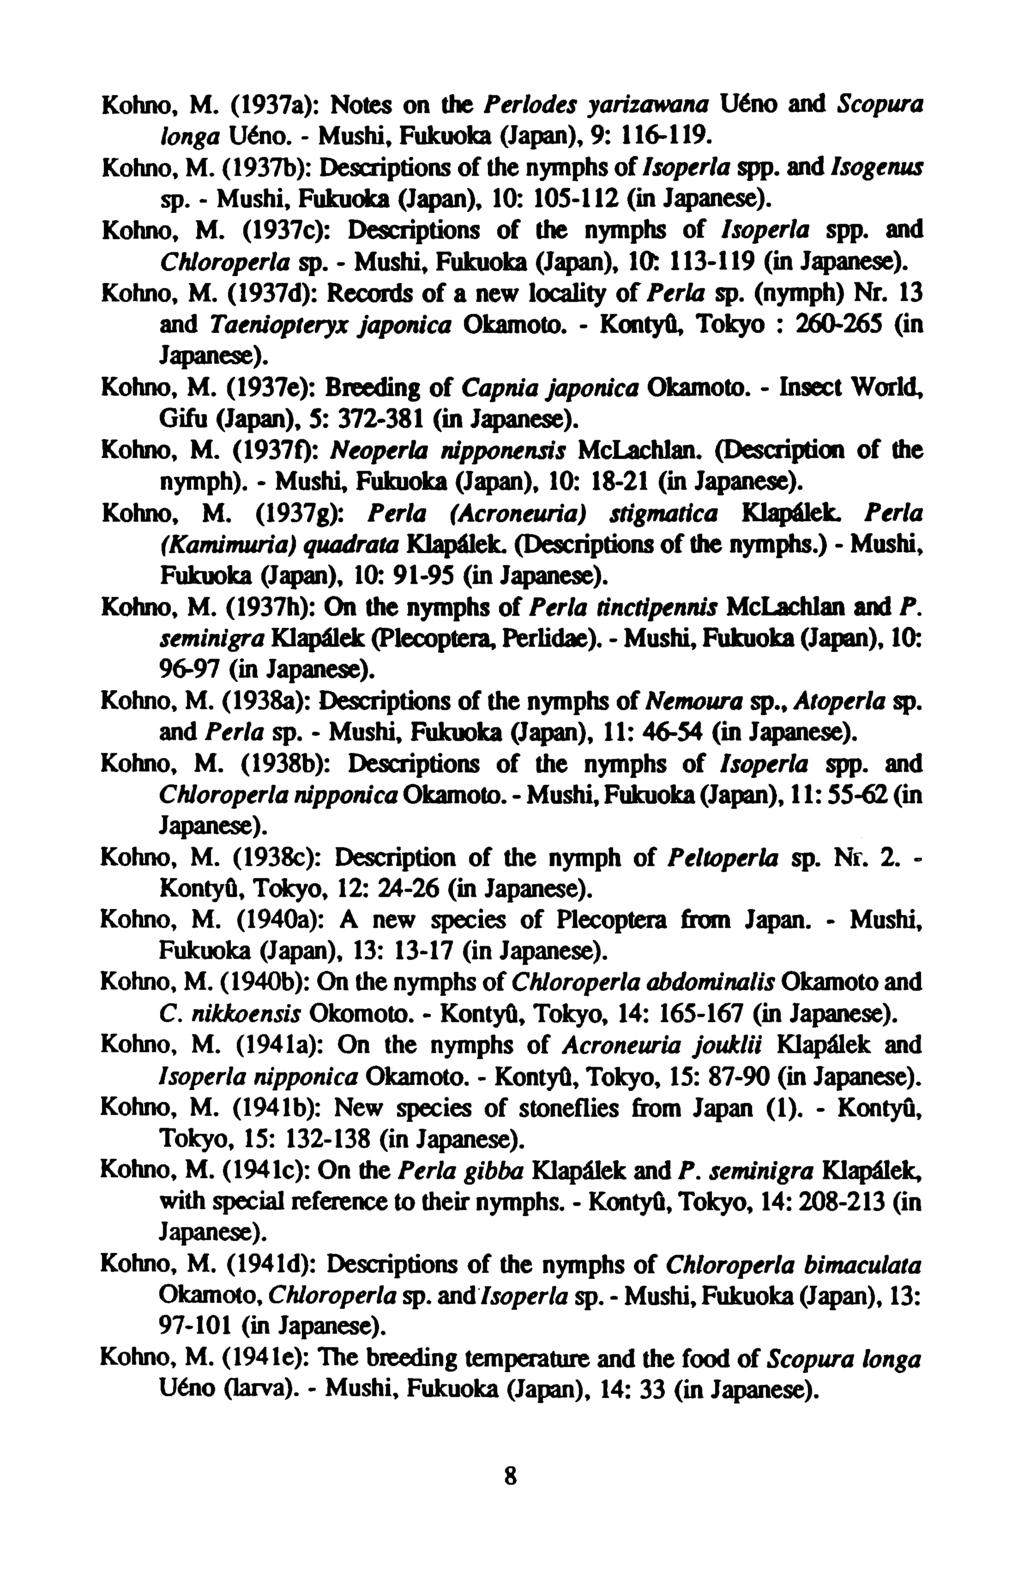 Kohno, M. (1937a): Notes on the Périodes yarizawana Uéno and Scopura longa Uéno. - Mushi, Fukuoka (Japan), 9: 116-119. Kohno, M. (1937b): Descriptions of the nymphs of Isoperla spp. and Isogenus sp.